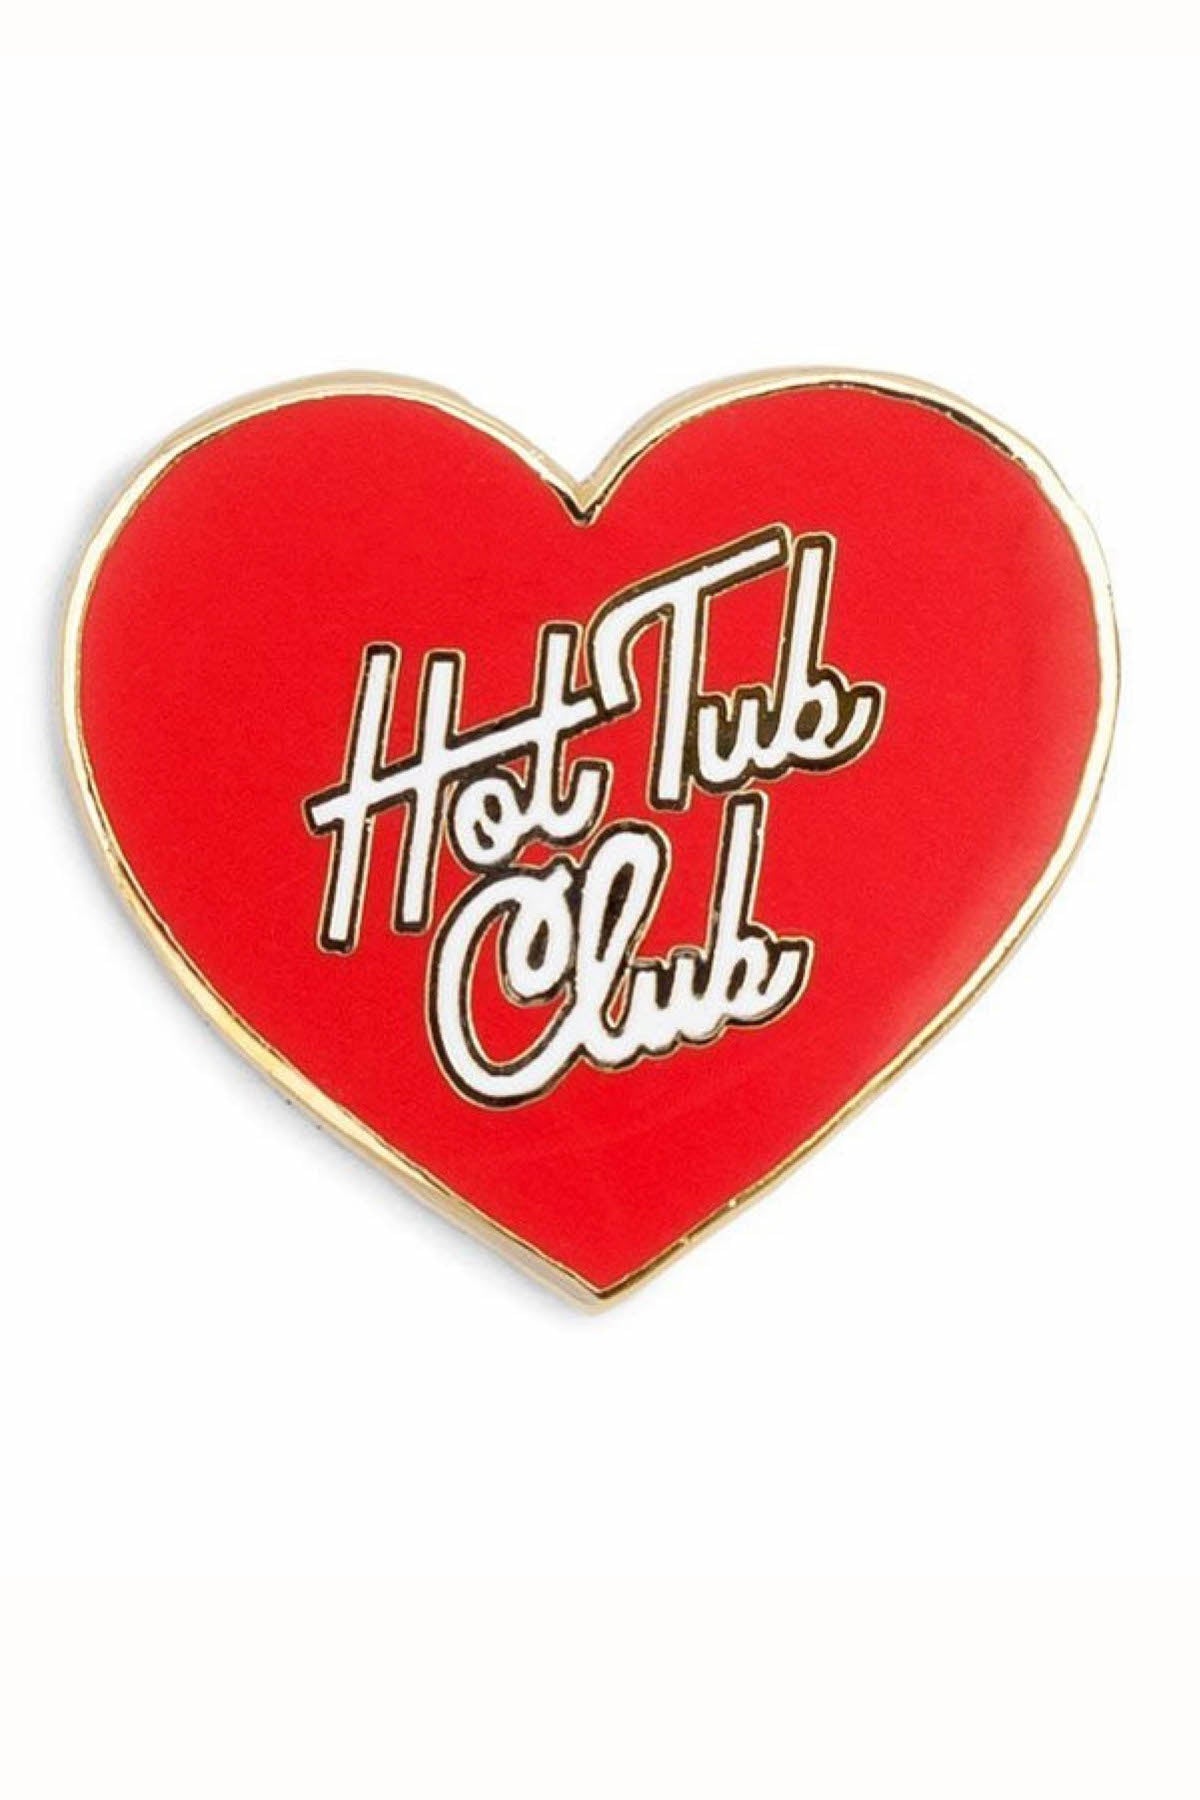 Ban.do Hot Tub Club Enamel Pin